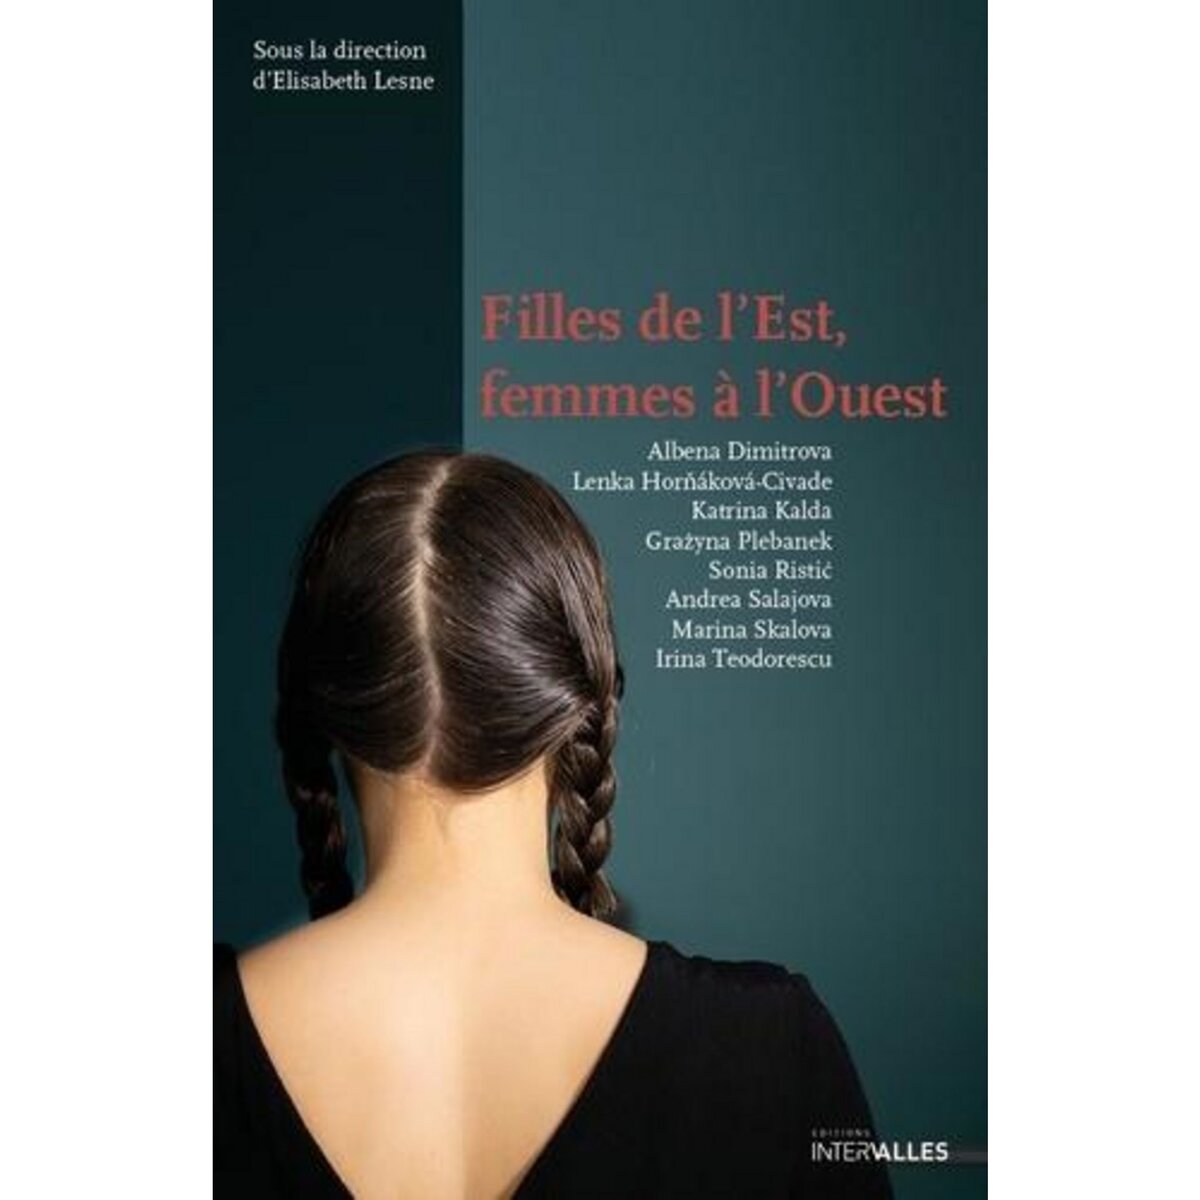  FILLES DE L'EST, FEMMES A L'OUEST, Lesne Elisabeth